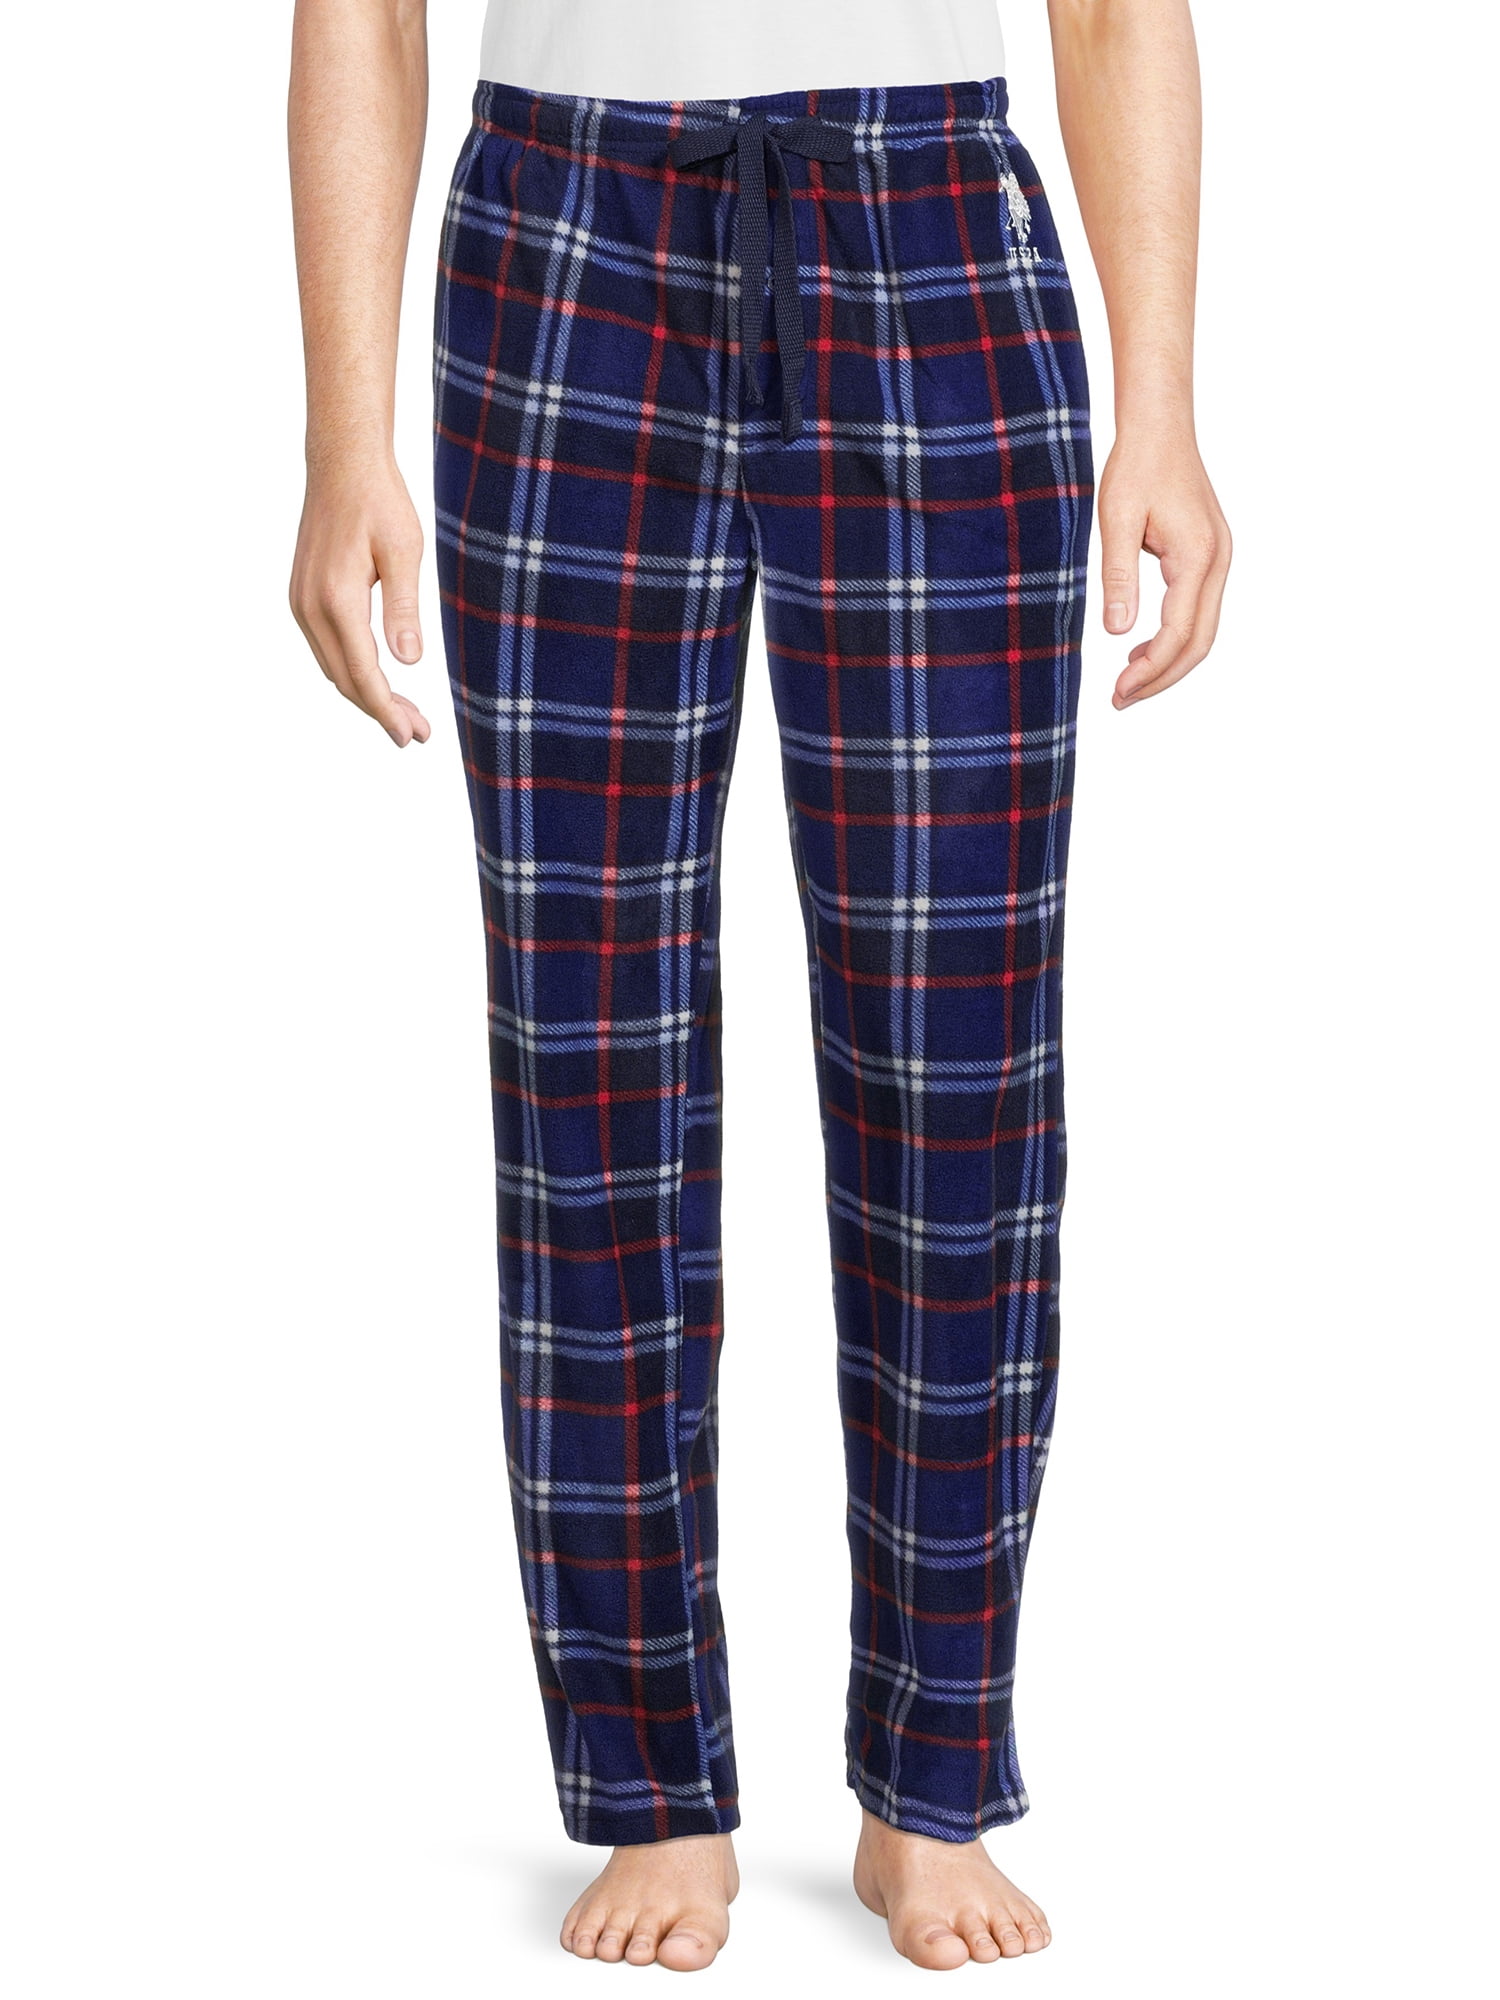 U.S. Polo Assn. Men's Microfleece Lounge Pajama Pants, Sizes S-3XL